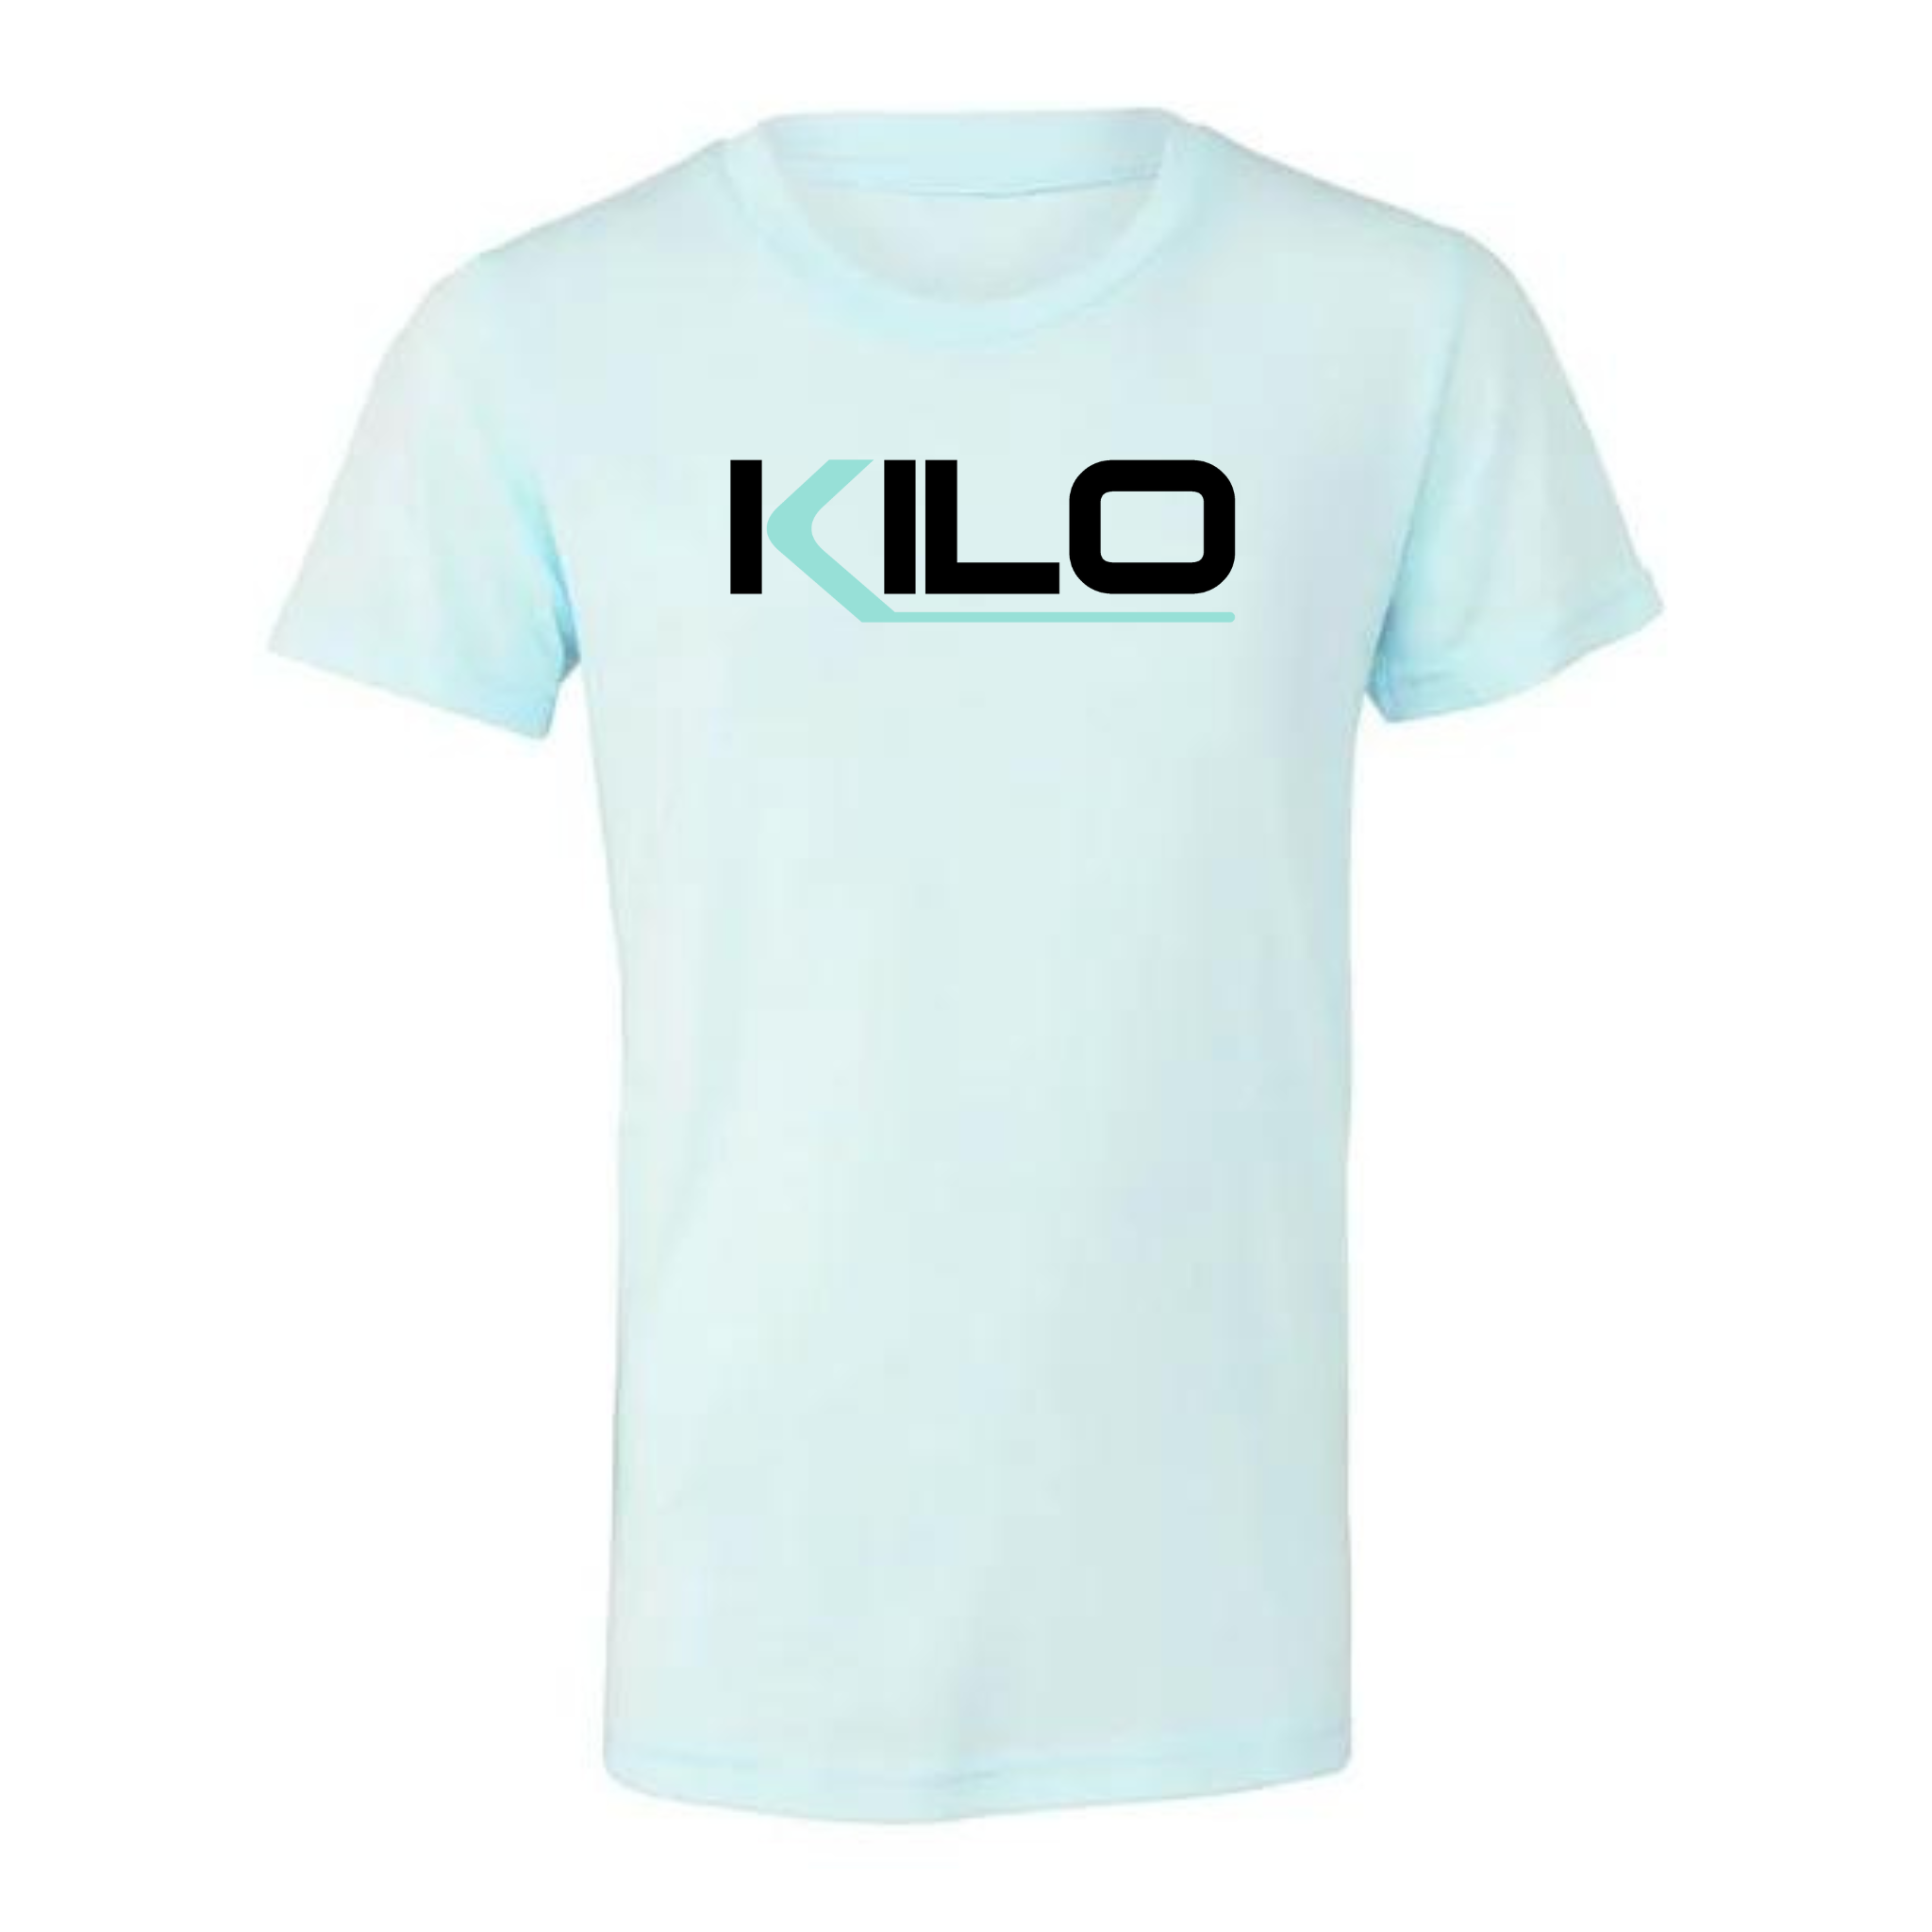 KILO T-Shirt – KILO Strength Society